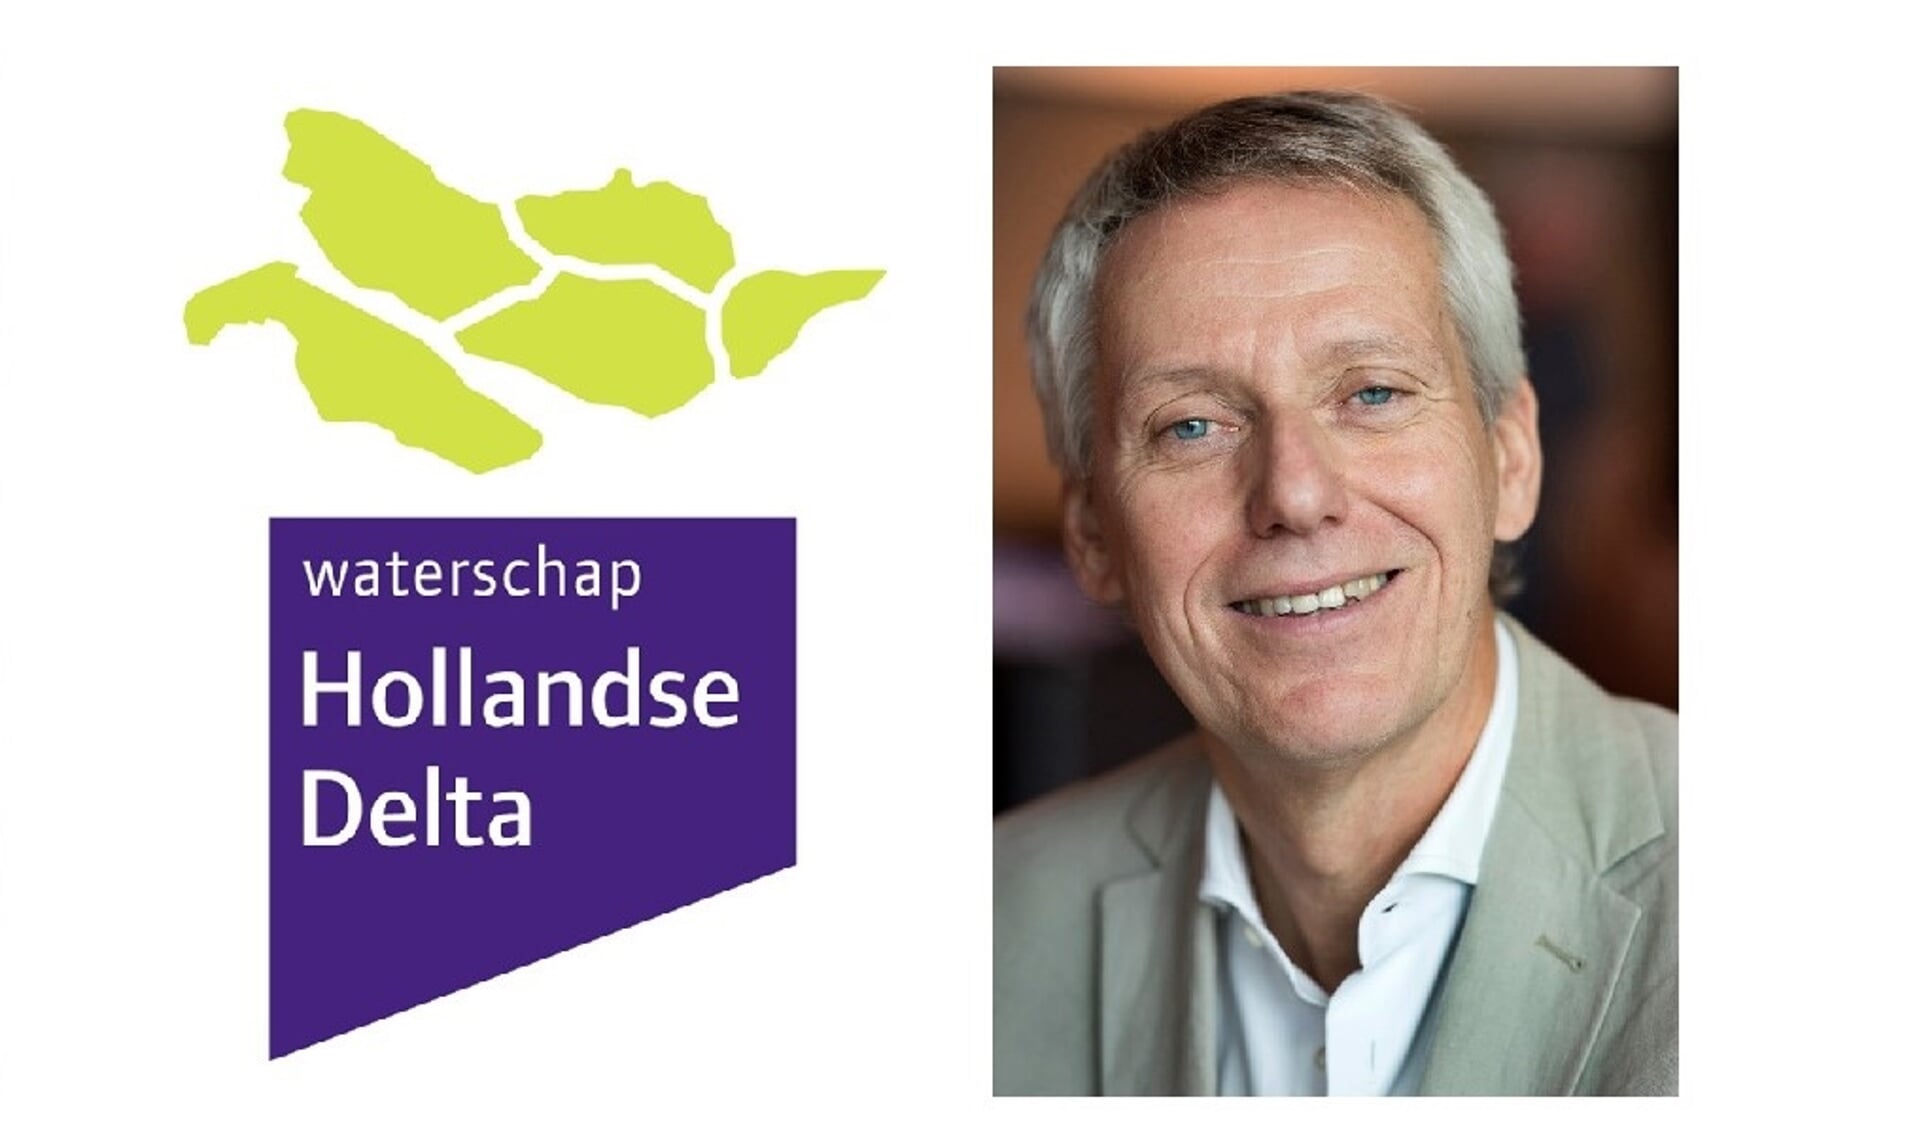 Jan Bonjer begint op 1 april bij waterschap Hollandse Delta